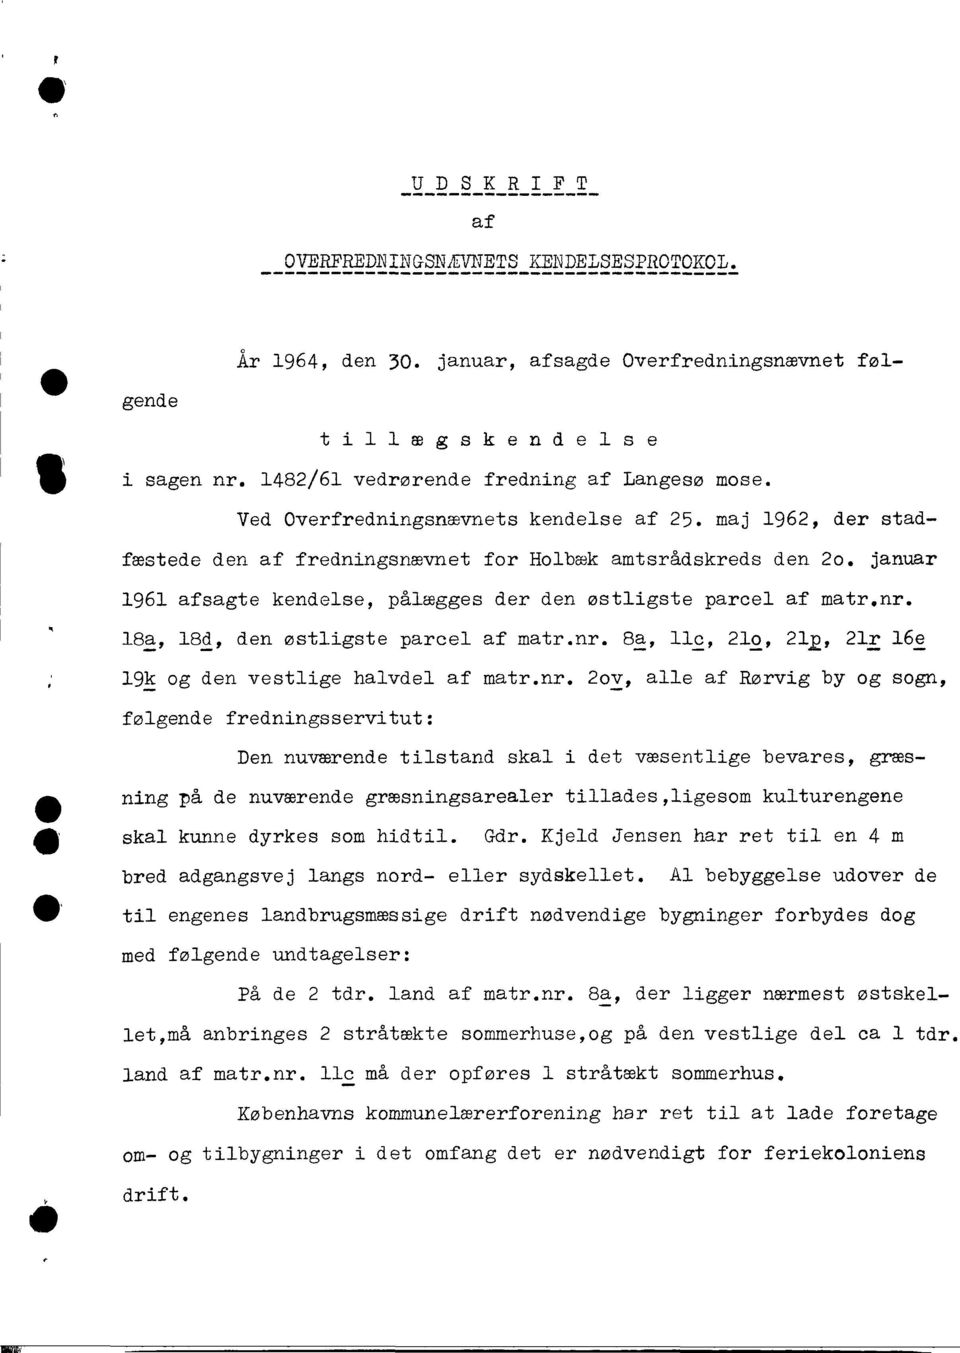 januar 1961 afsagte kendelse, pålægges der den østligste parcel af matr.nr.